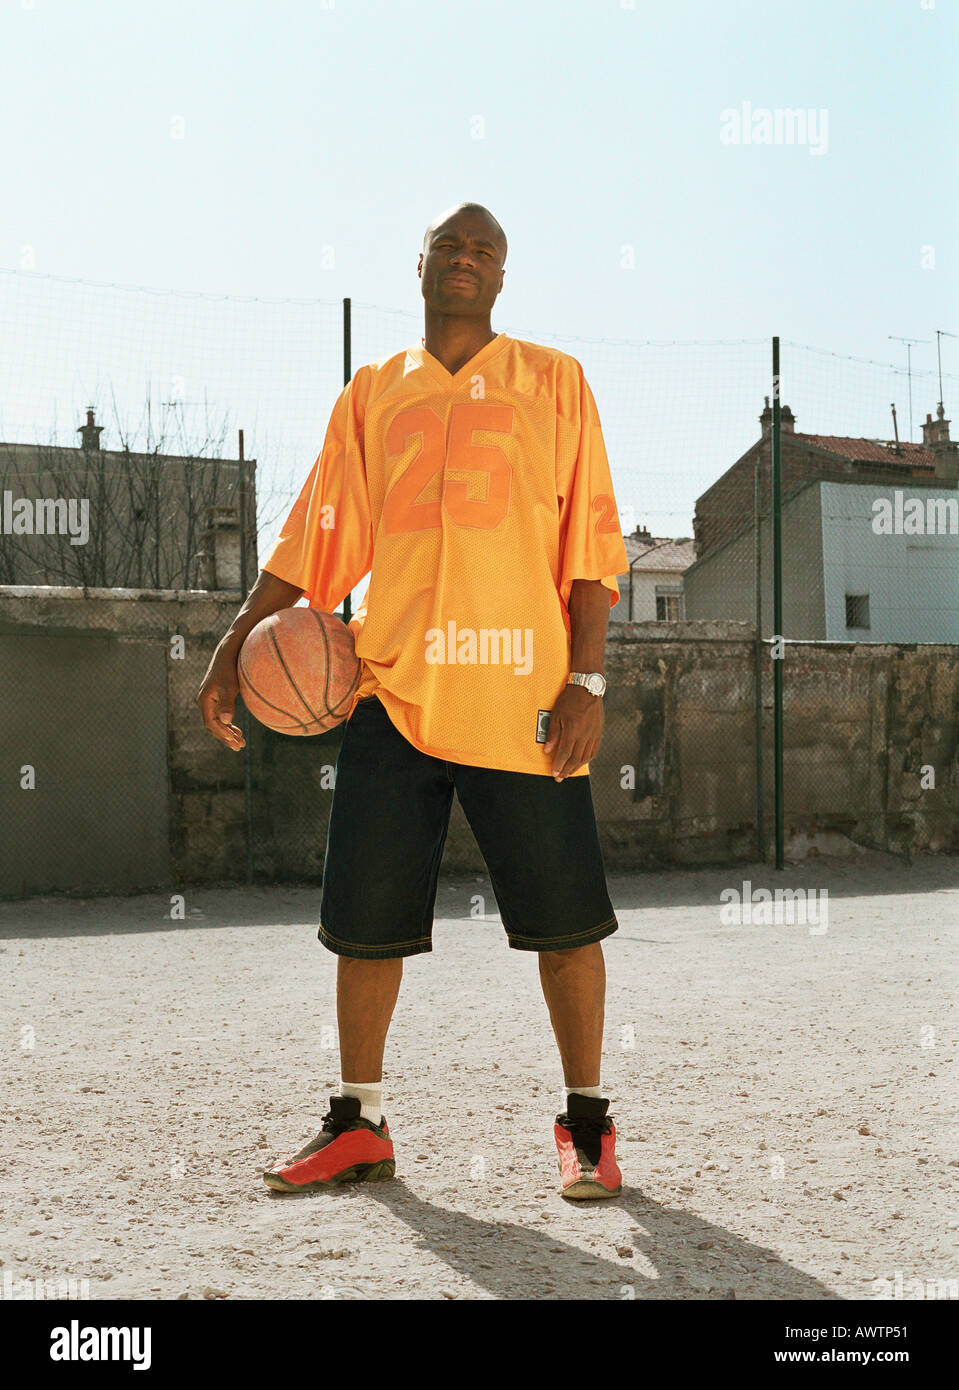 Homme debout avec une aire urbaine de basket-ball Photo Stock - Alamy